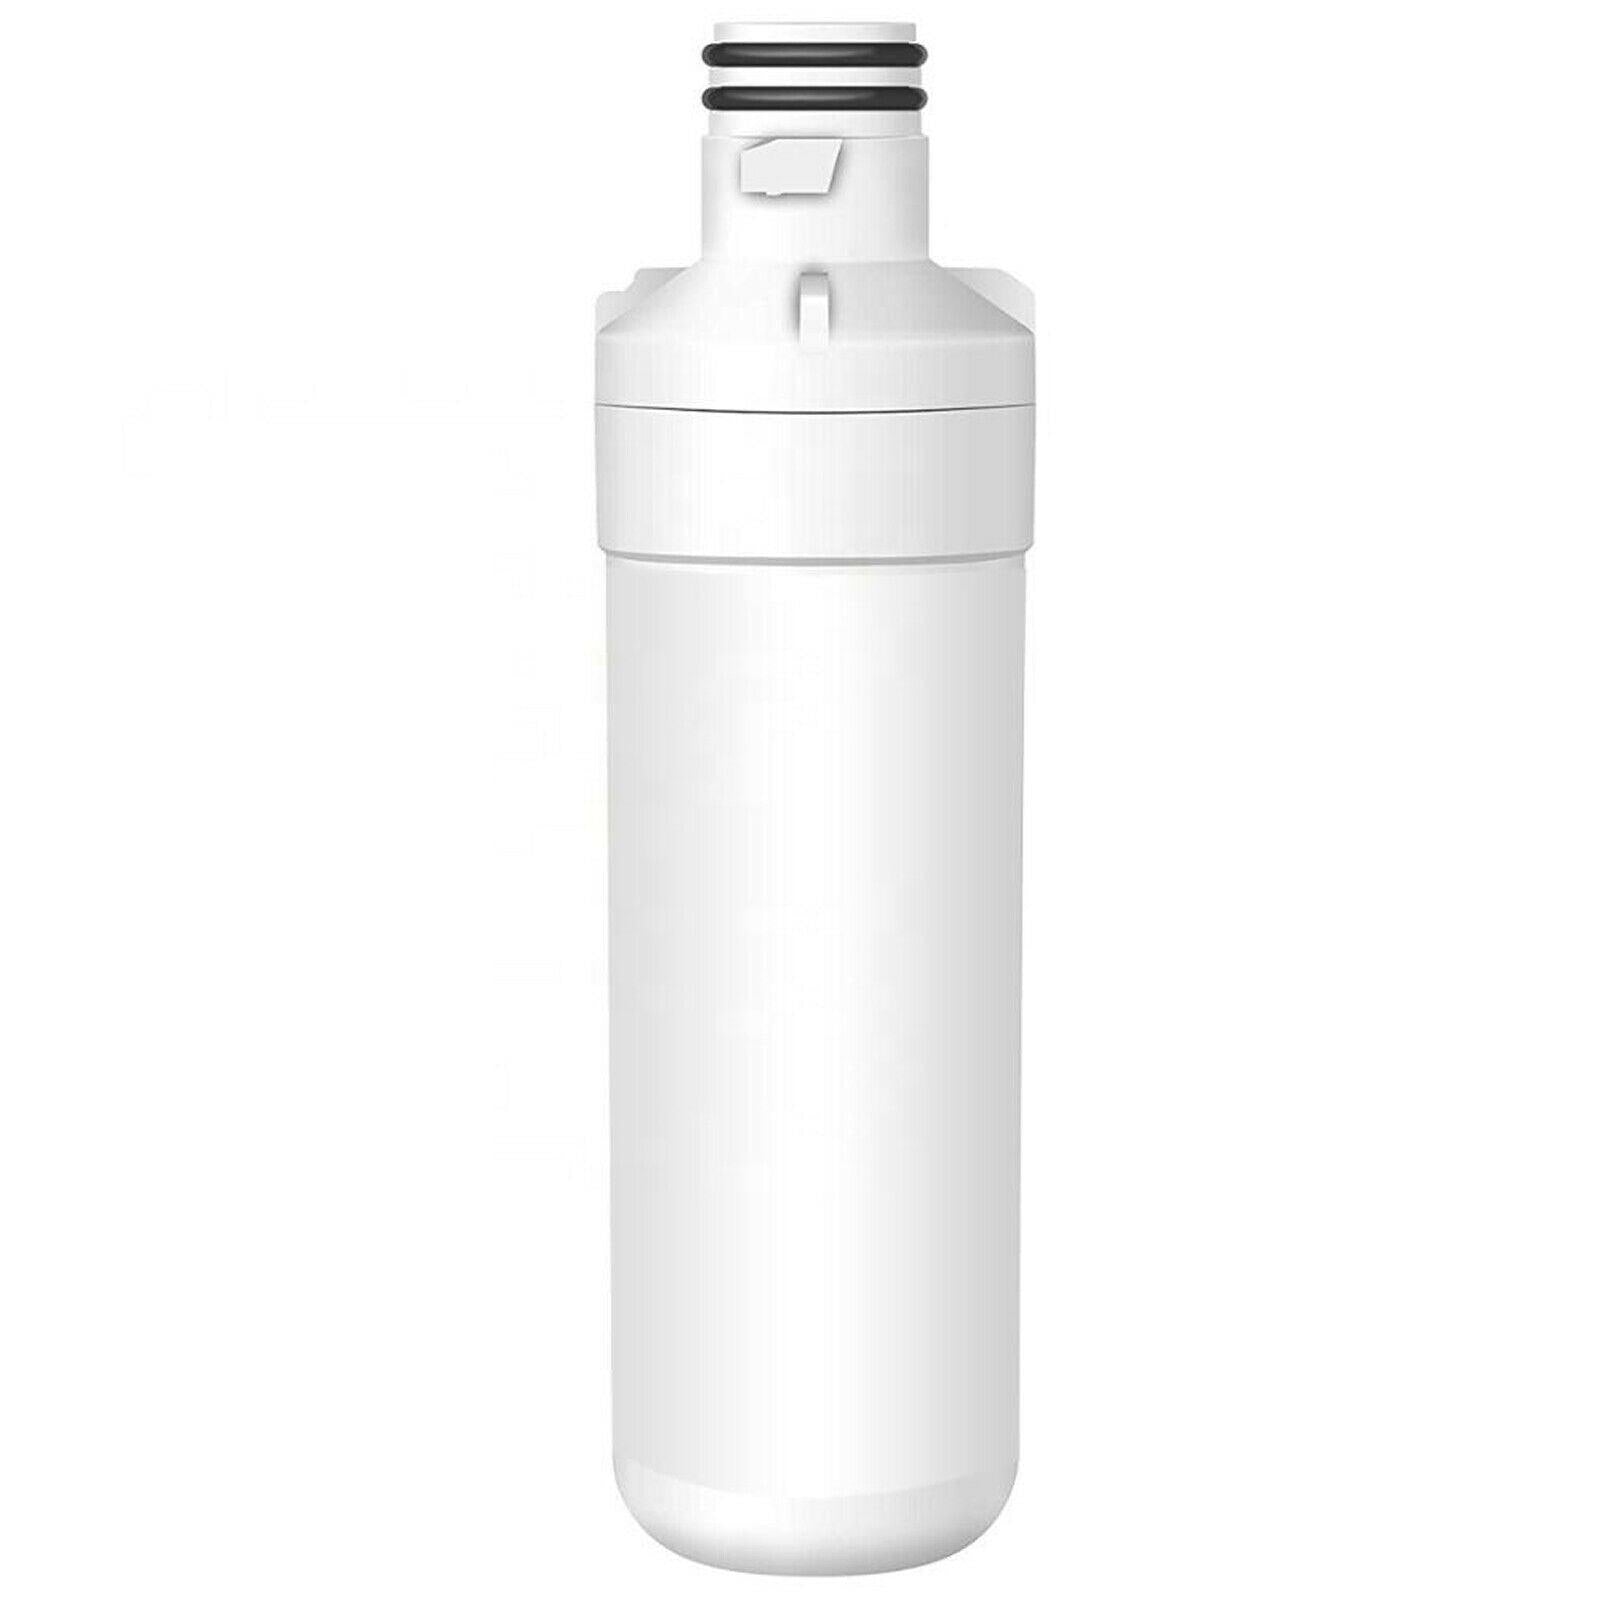 Fridge Water Filter For LG LT1000P GF-L570PL GF-L708PL GF-V570MBL LFXC24796D Sparesbarn